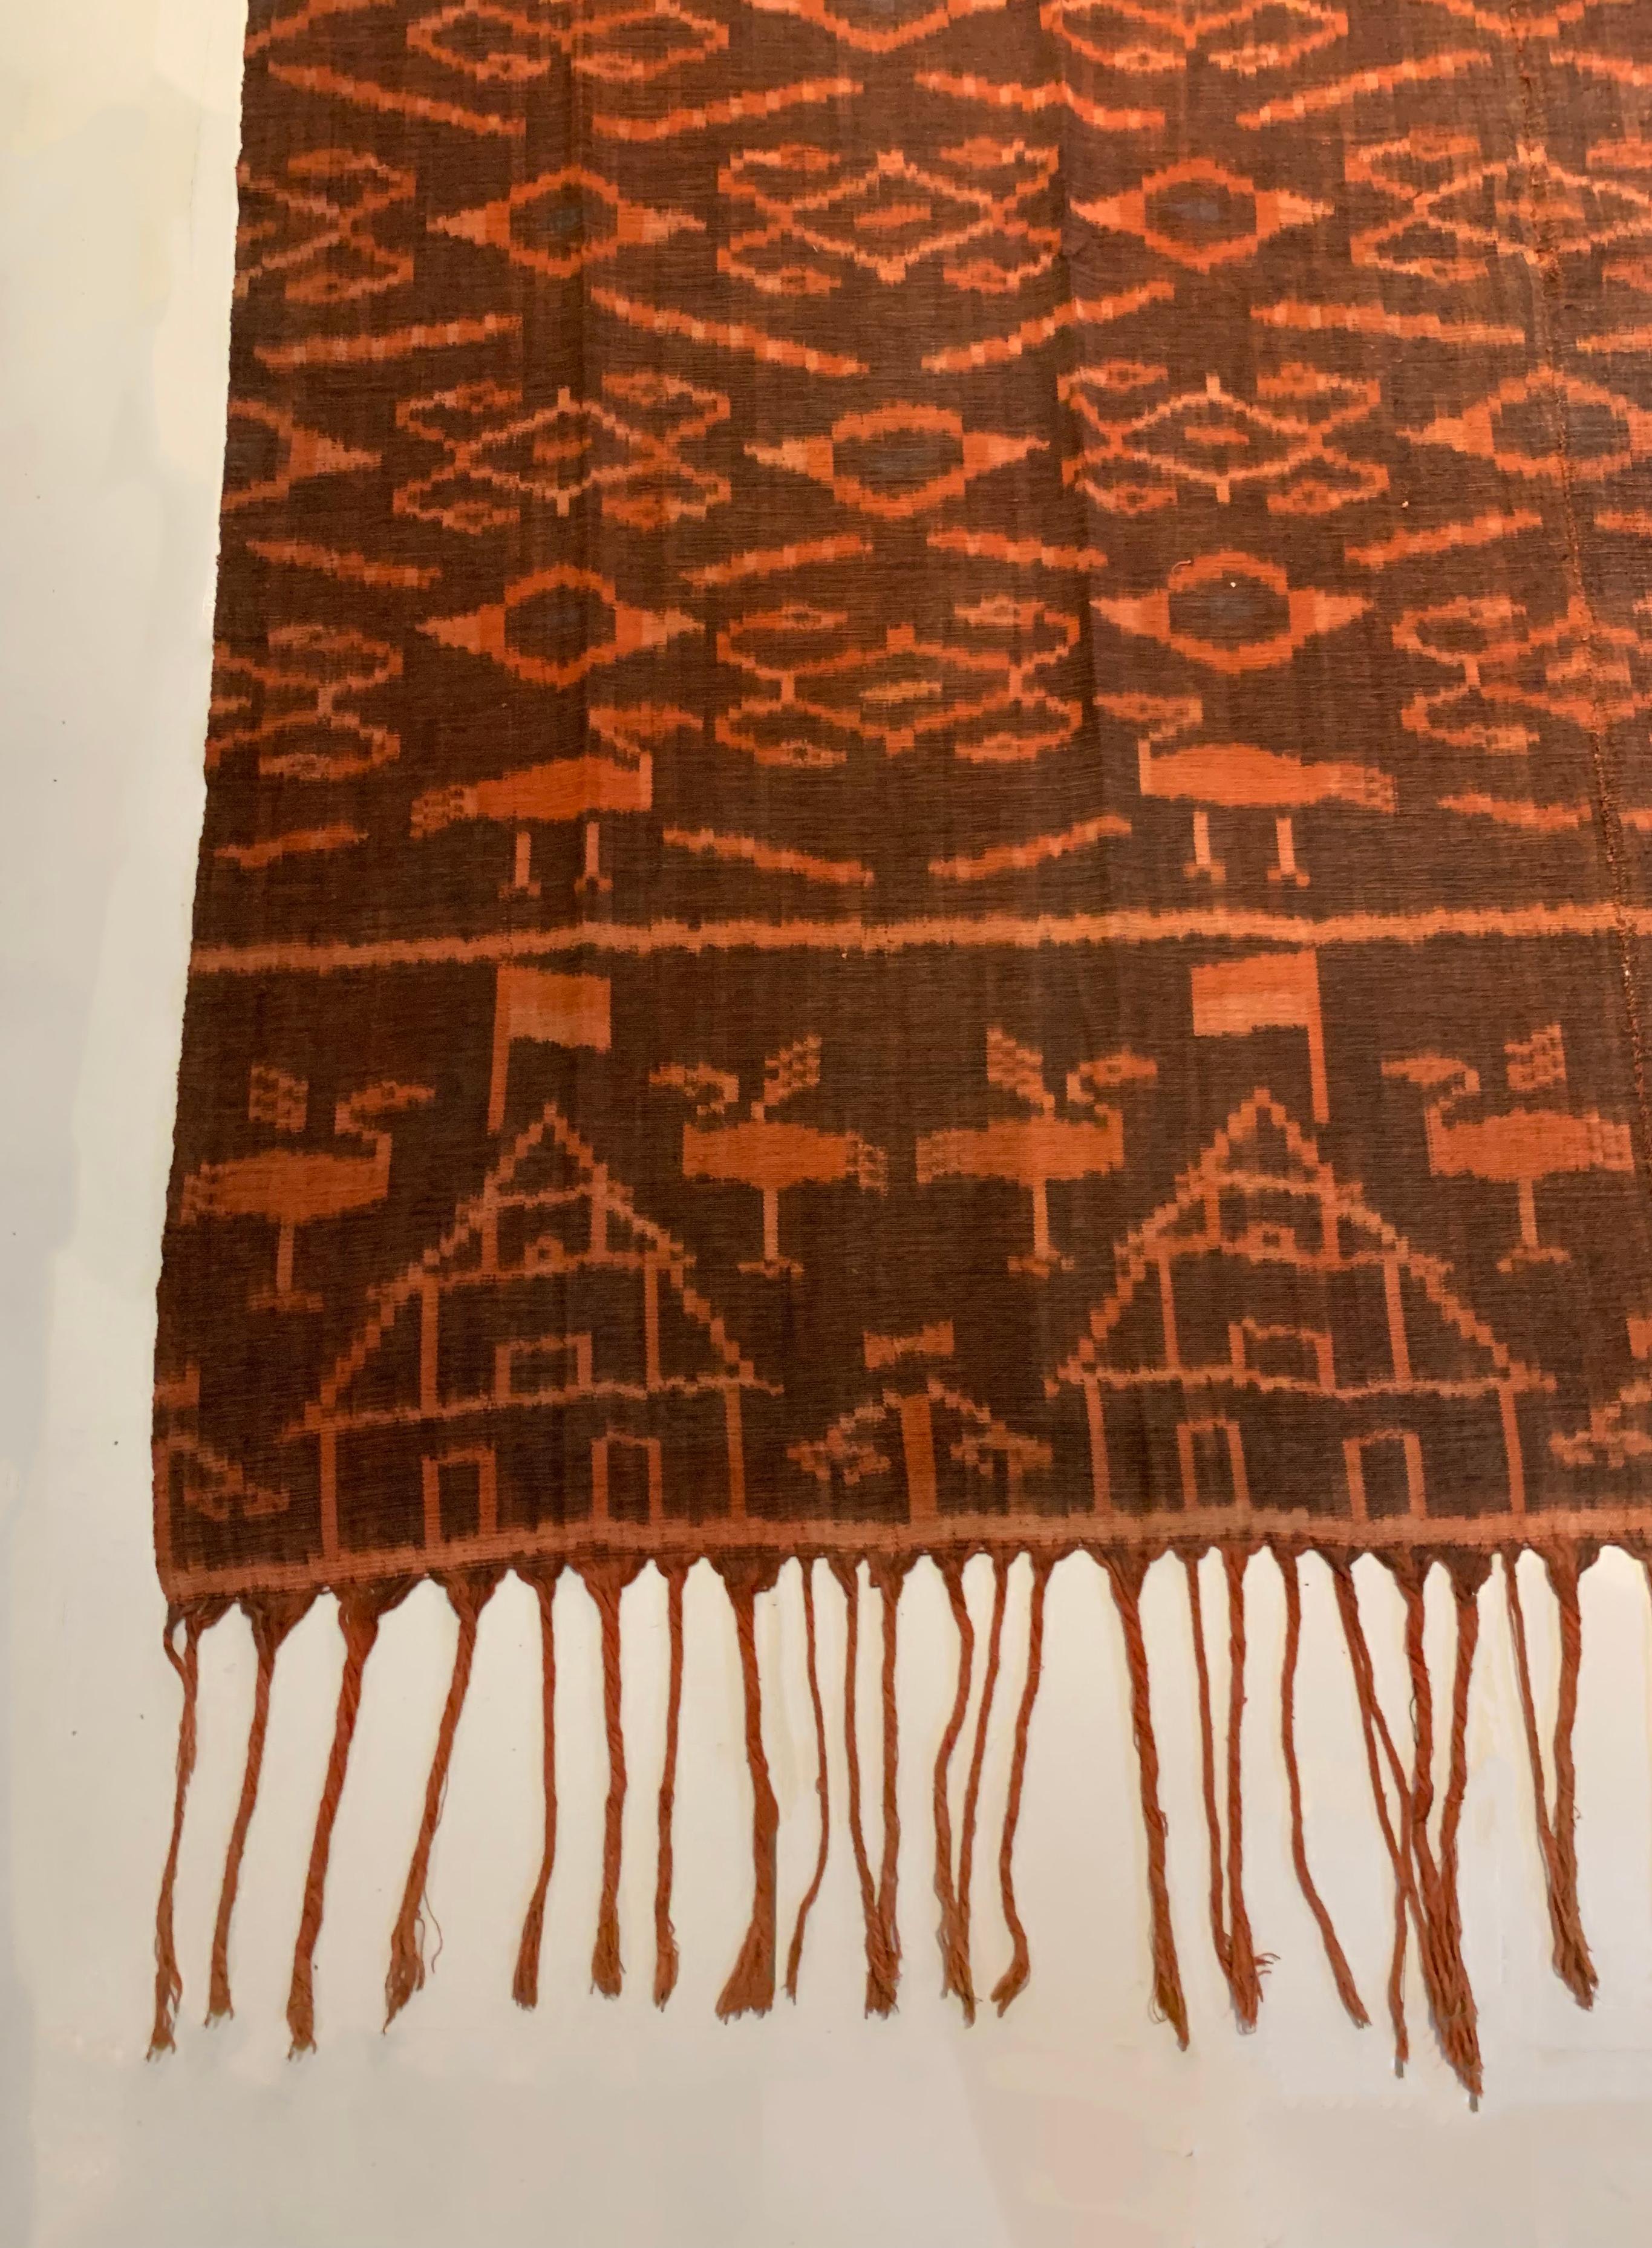 Dieses Ikat-Textil stammt von der Insel Flores in Indonesien. Es wird mit natürlich gefärbten Garnen nach einer seit Generationen überlieferten Methode handgewebt. Es zeigt eine Mischung aus Stammesmustern und der indonesischen Flagge. Es gibt auch